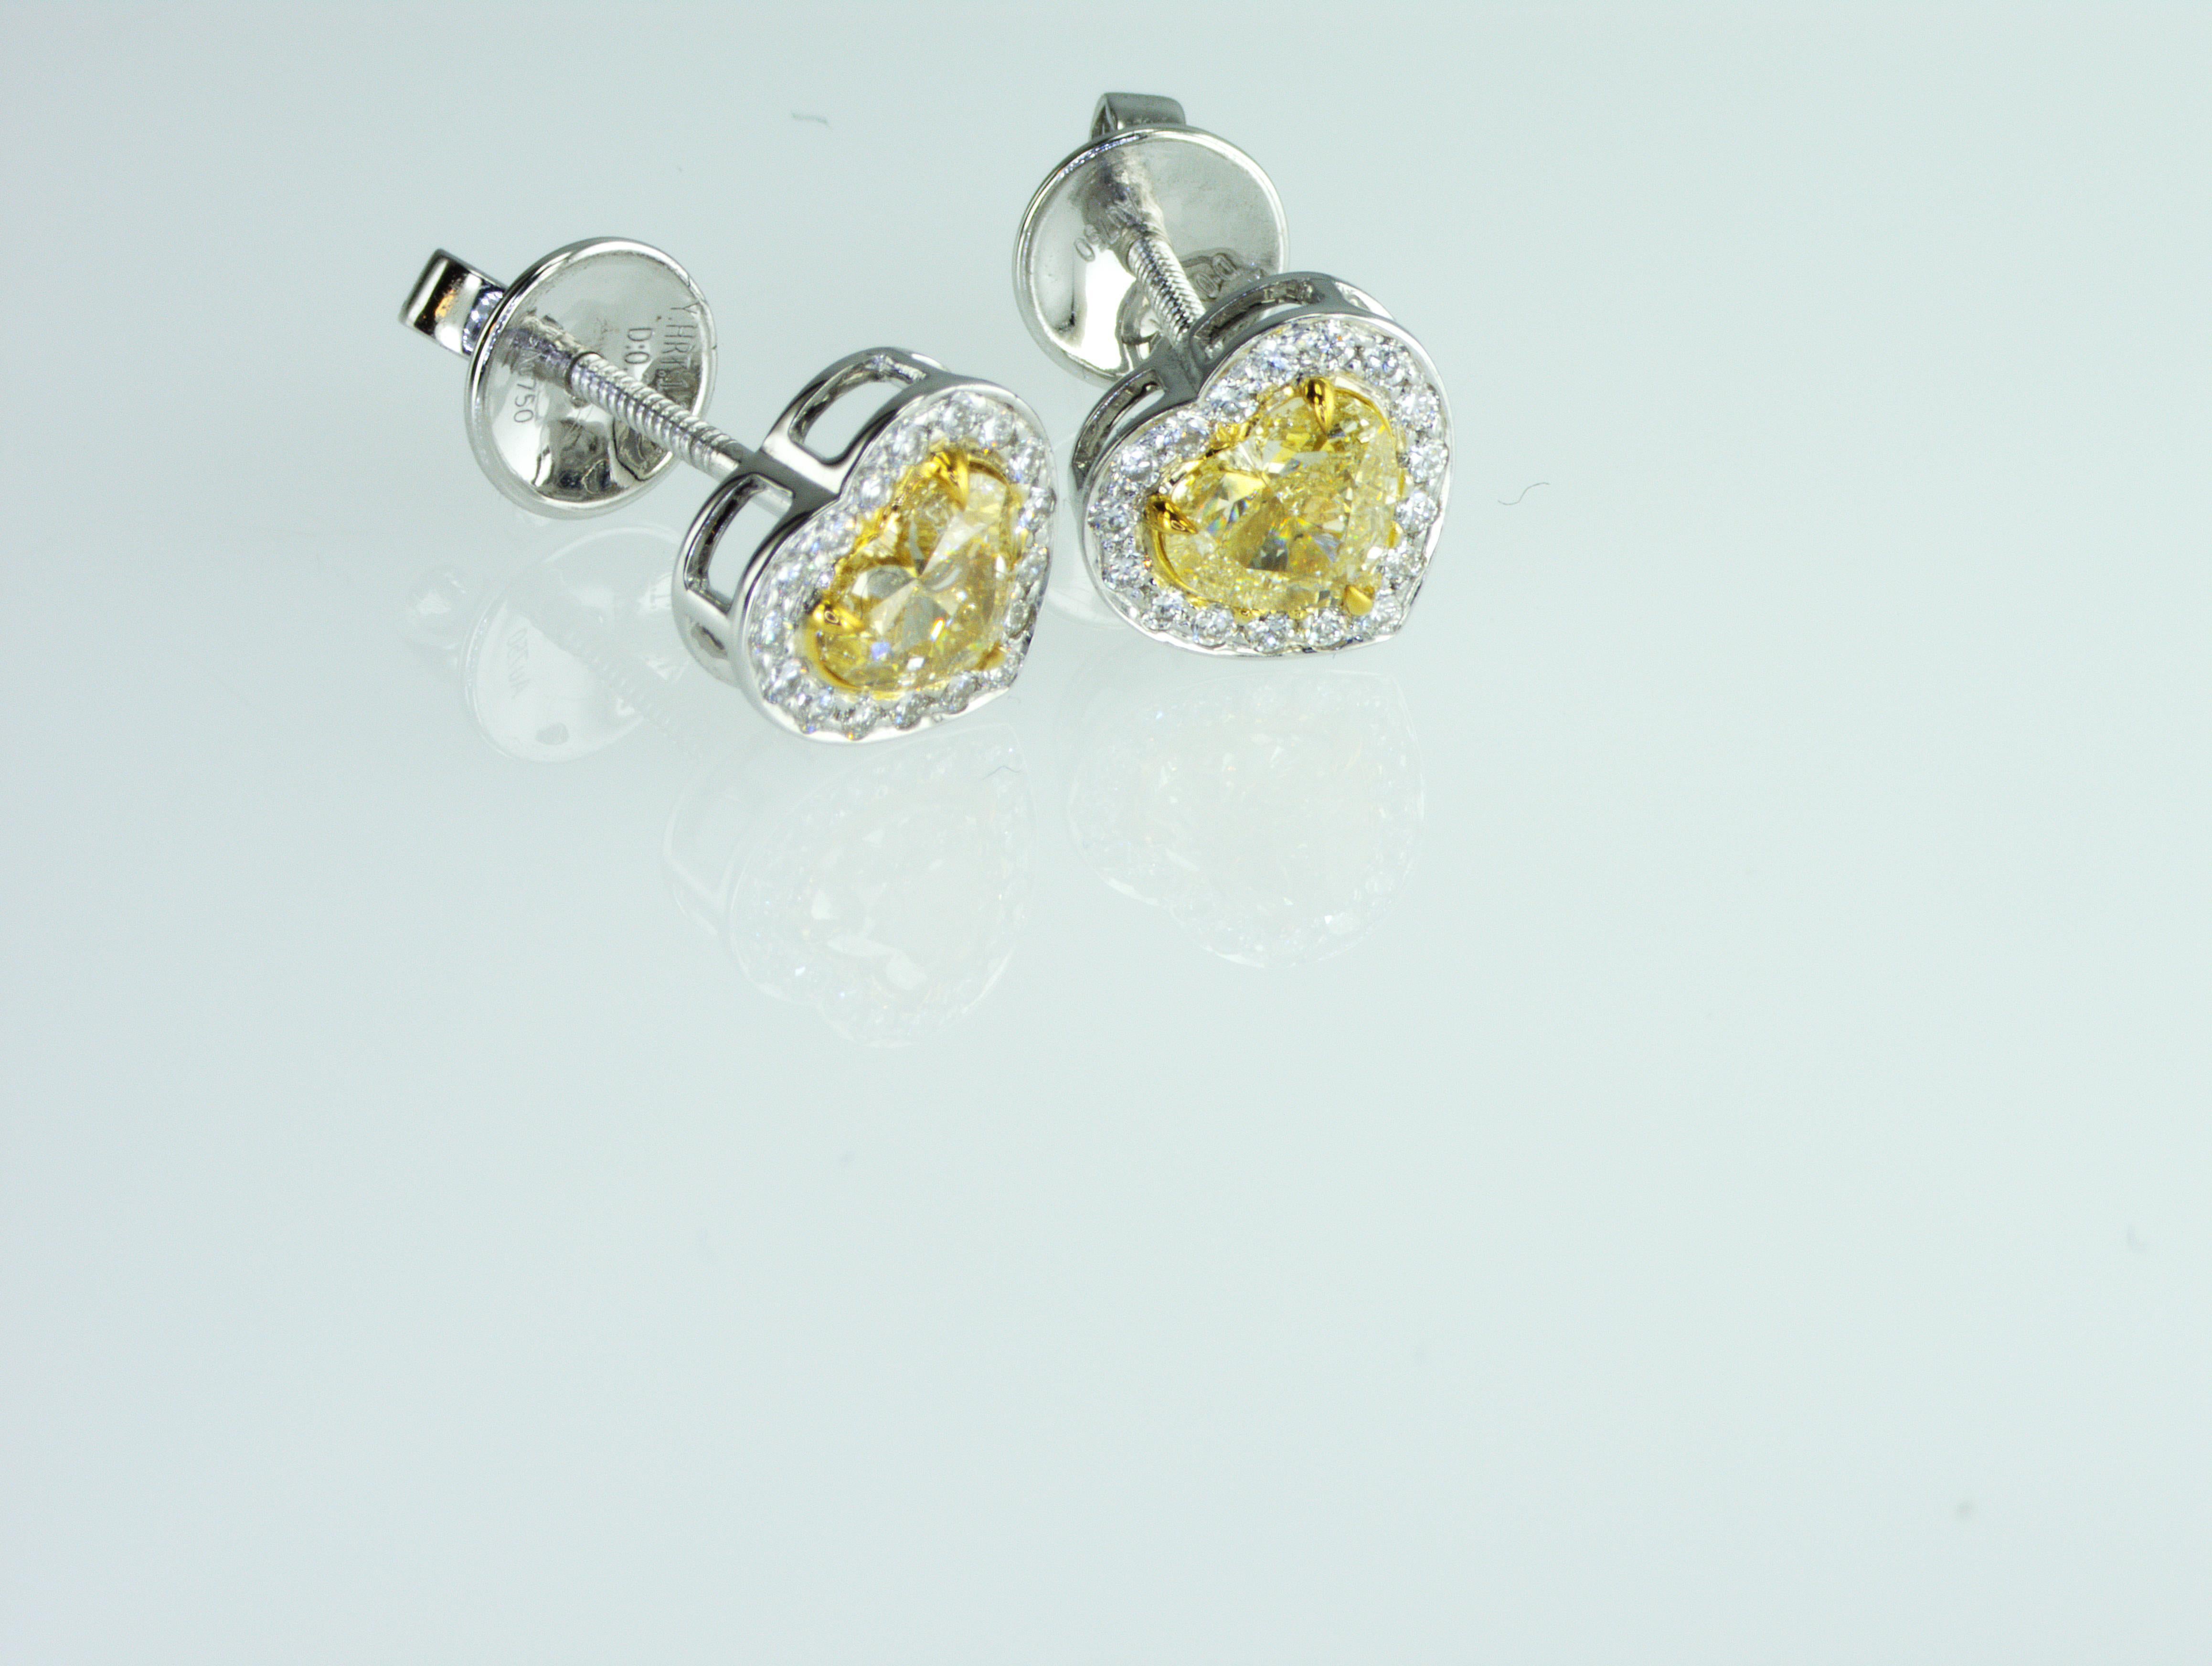 Wir sind ein Unternehmen für die Herstellung von Naturdiamanten mit Sitz in Dubai.
Seltene 1,42 Karat Fancy Yellow Heart Form natürliche Diamanten Ohrringe.
Das Gesamtgewicht der natürlichen Diamanten beträgt 1,42 Karat. Alle unsere Diamanten,